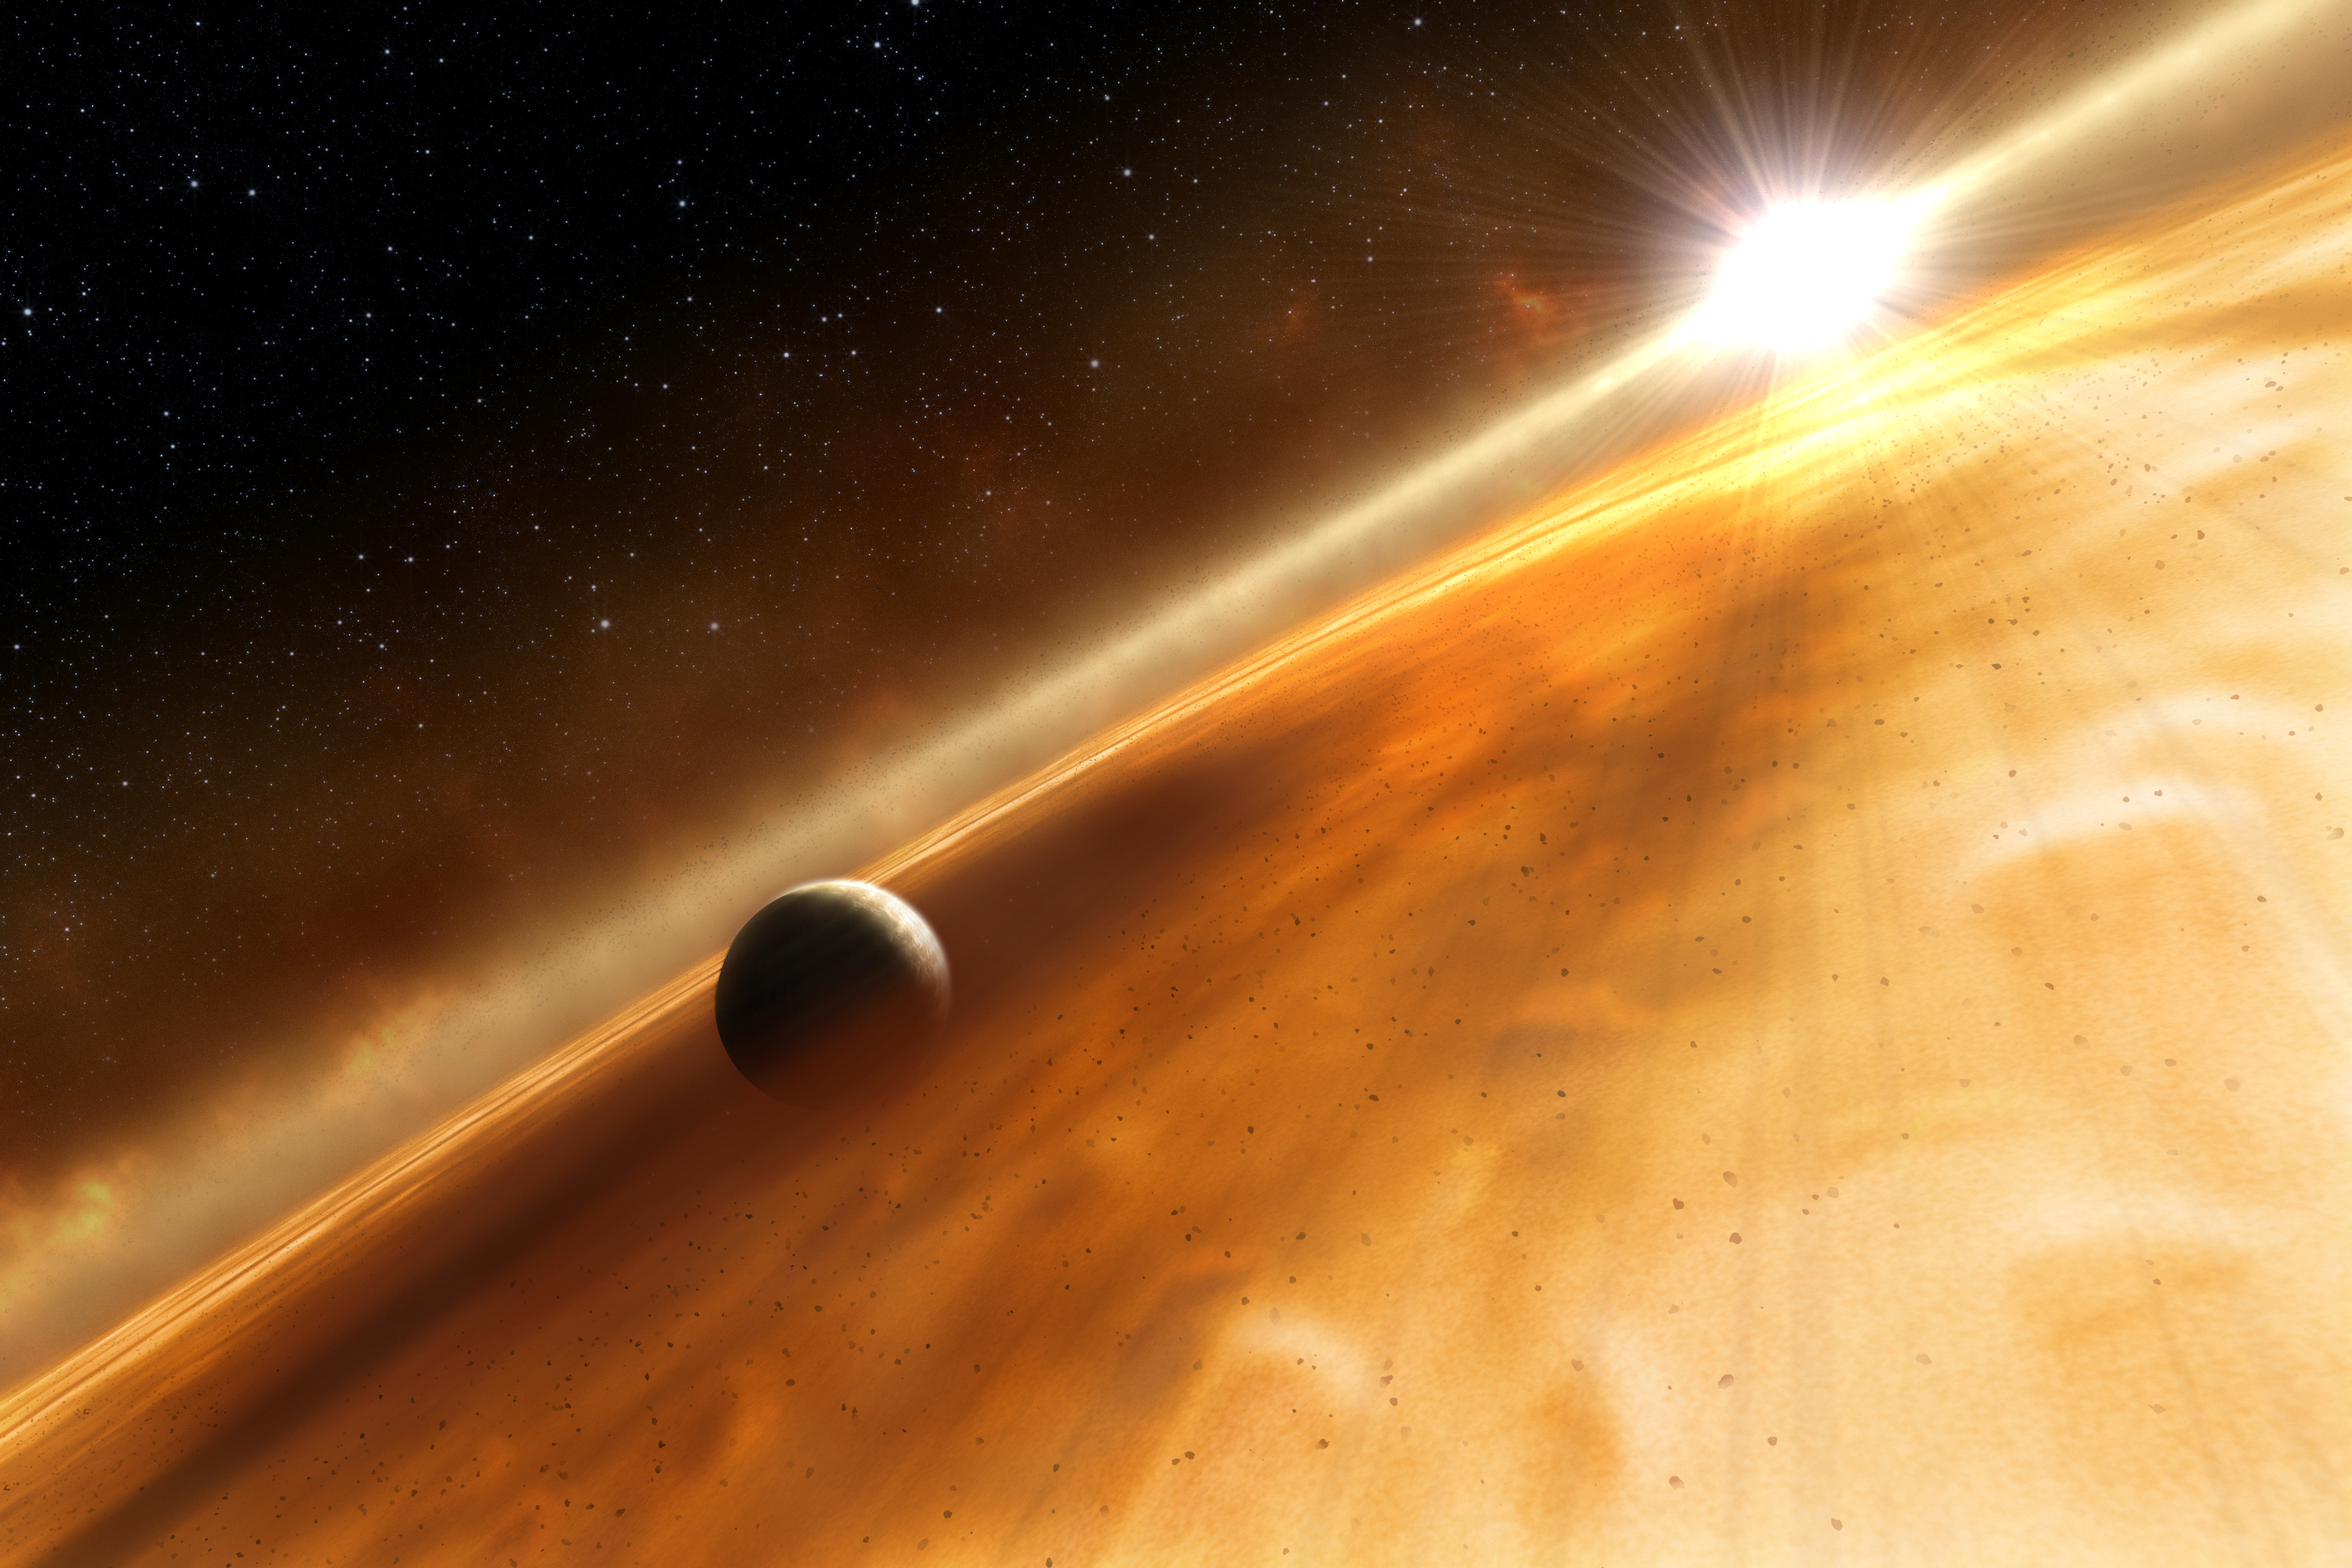 Vue d'artiste de la présumée exoplanète Fomalhaut b. © ESA, Nasa, L. Calcada